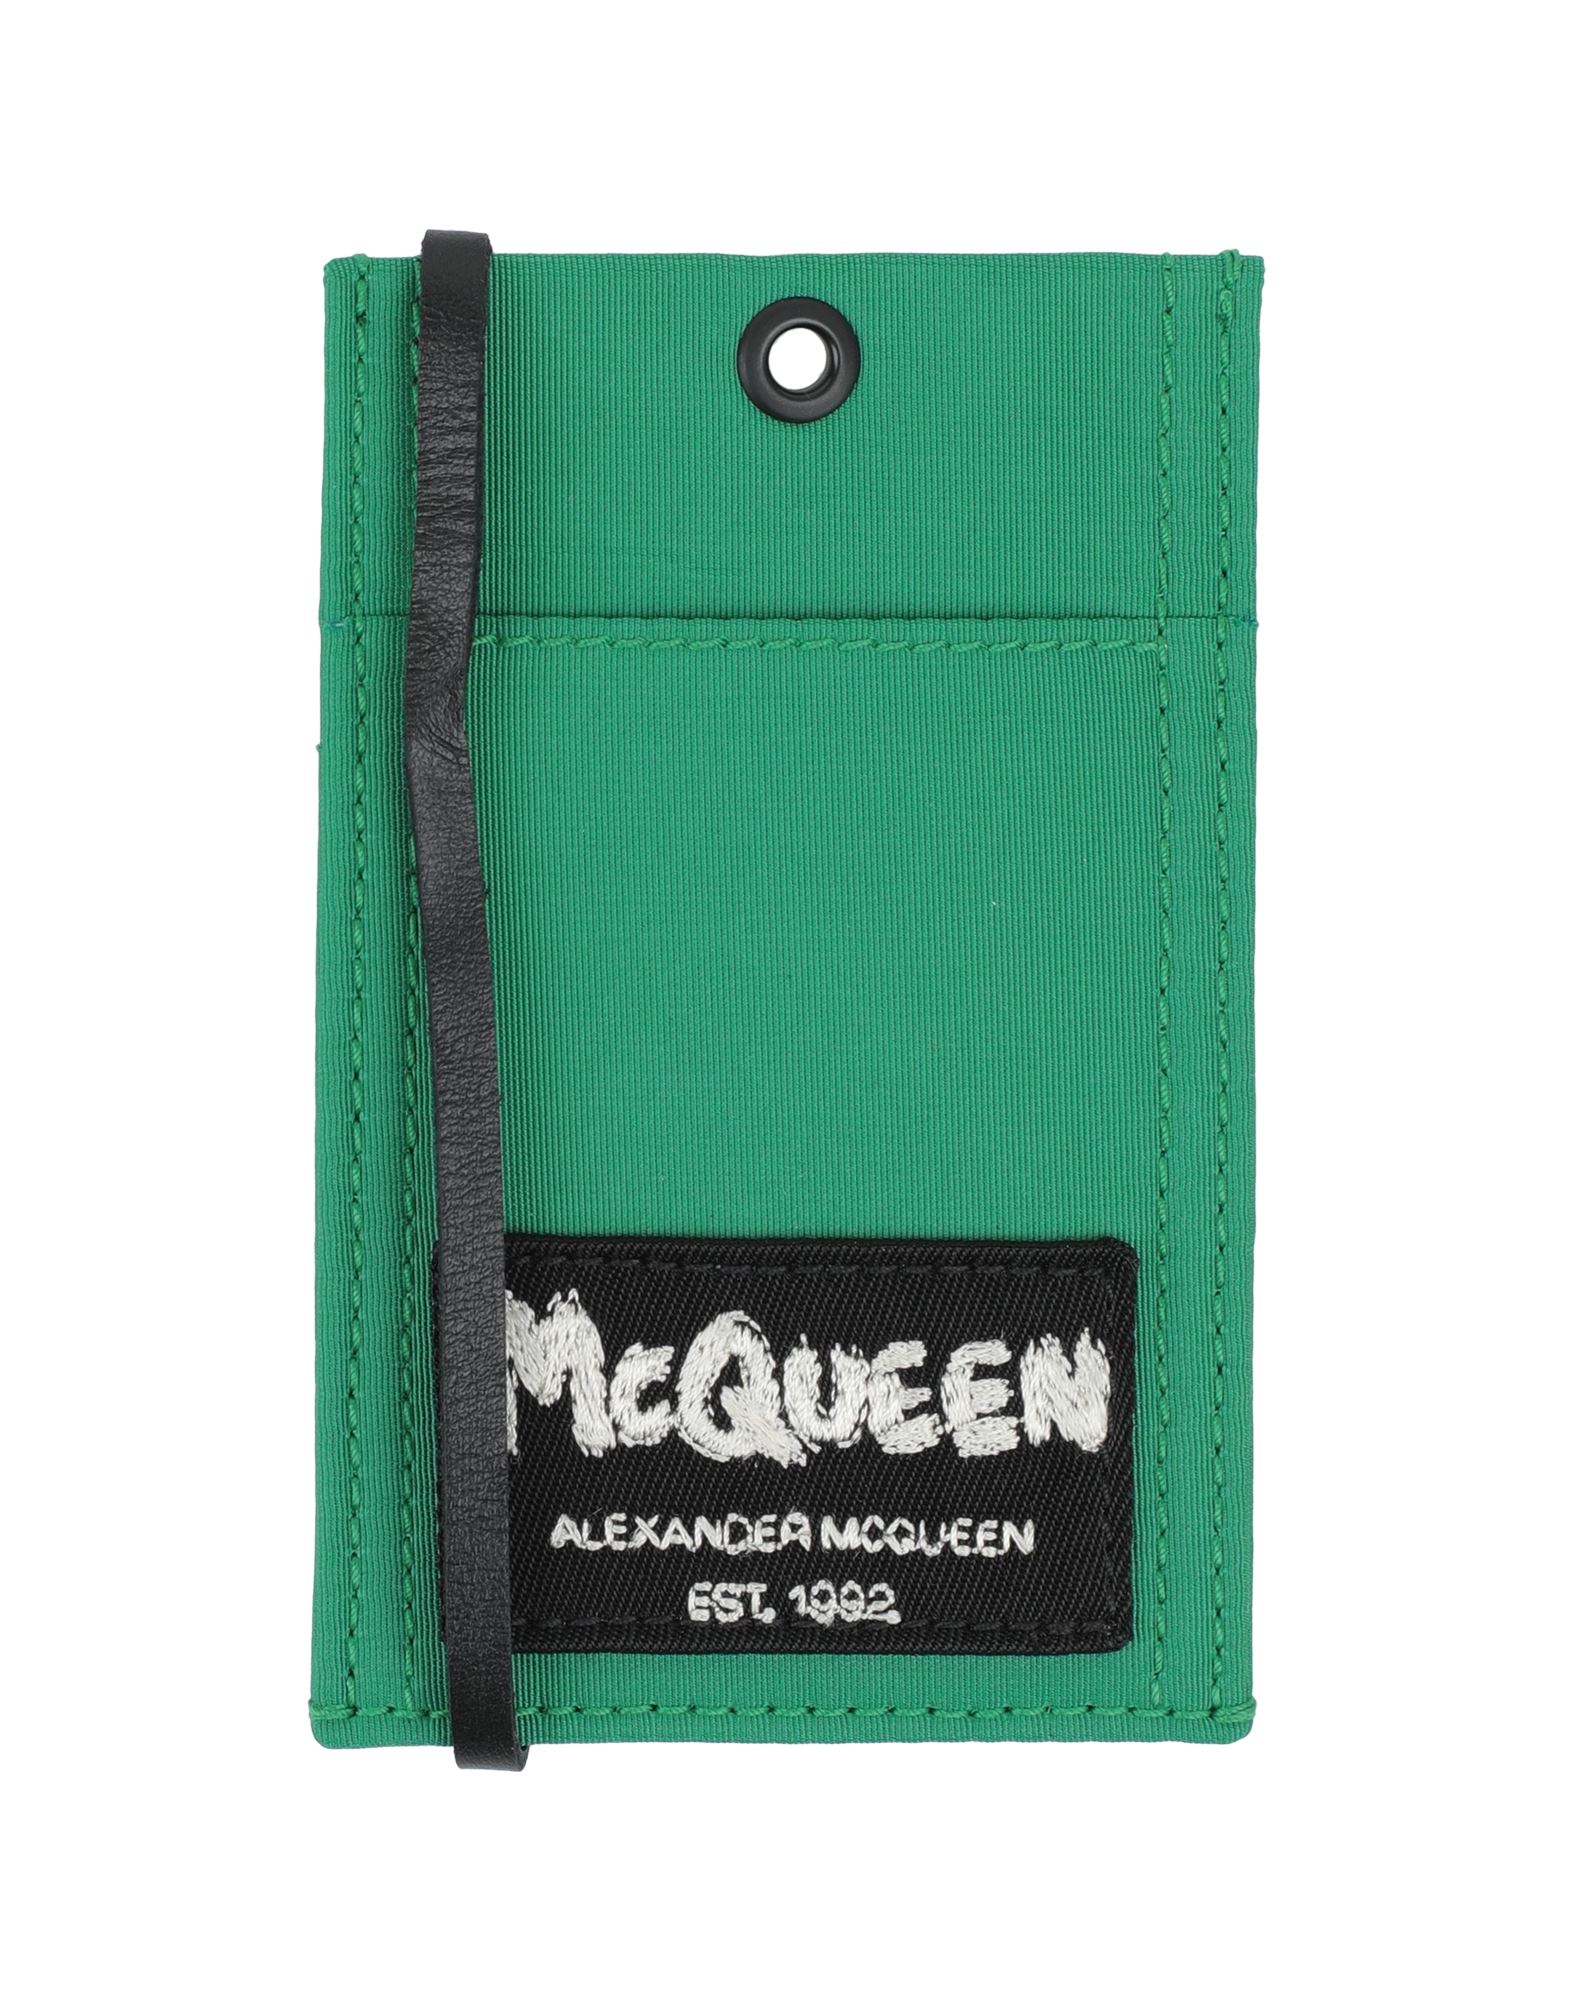 Alexander Mcqueen Document Holders In Green